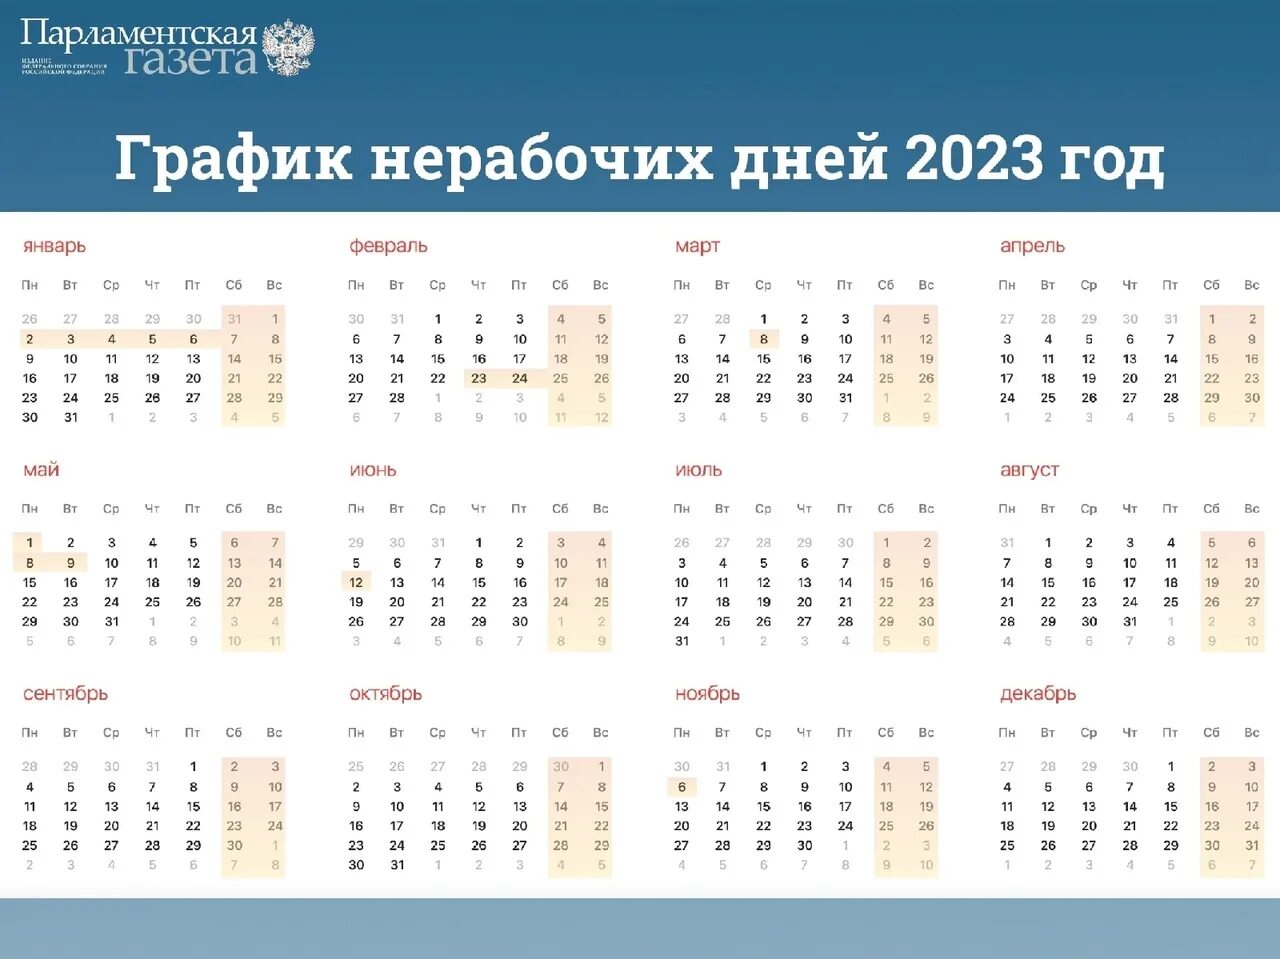 Рабочий календарь праздничных дней на 2023 год. Нерабочие дни в 2023 году. Выходные и праздничные дни в 2023. Выходные и праздничные дни в 2023 году. Календарные праздники на 2023 год.